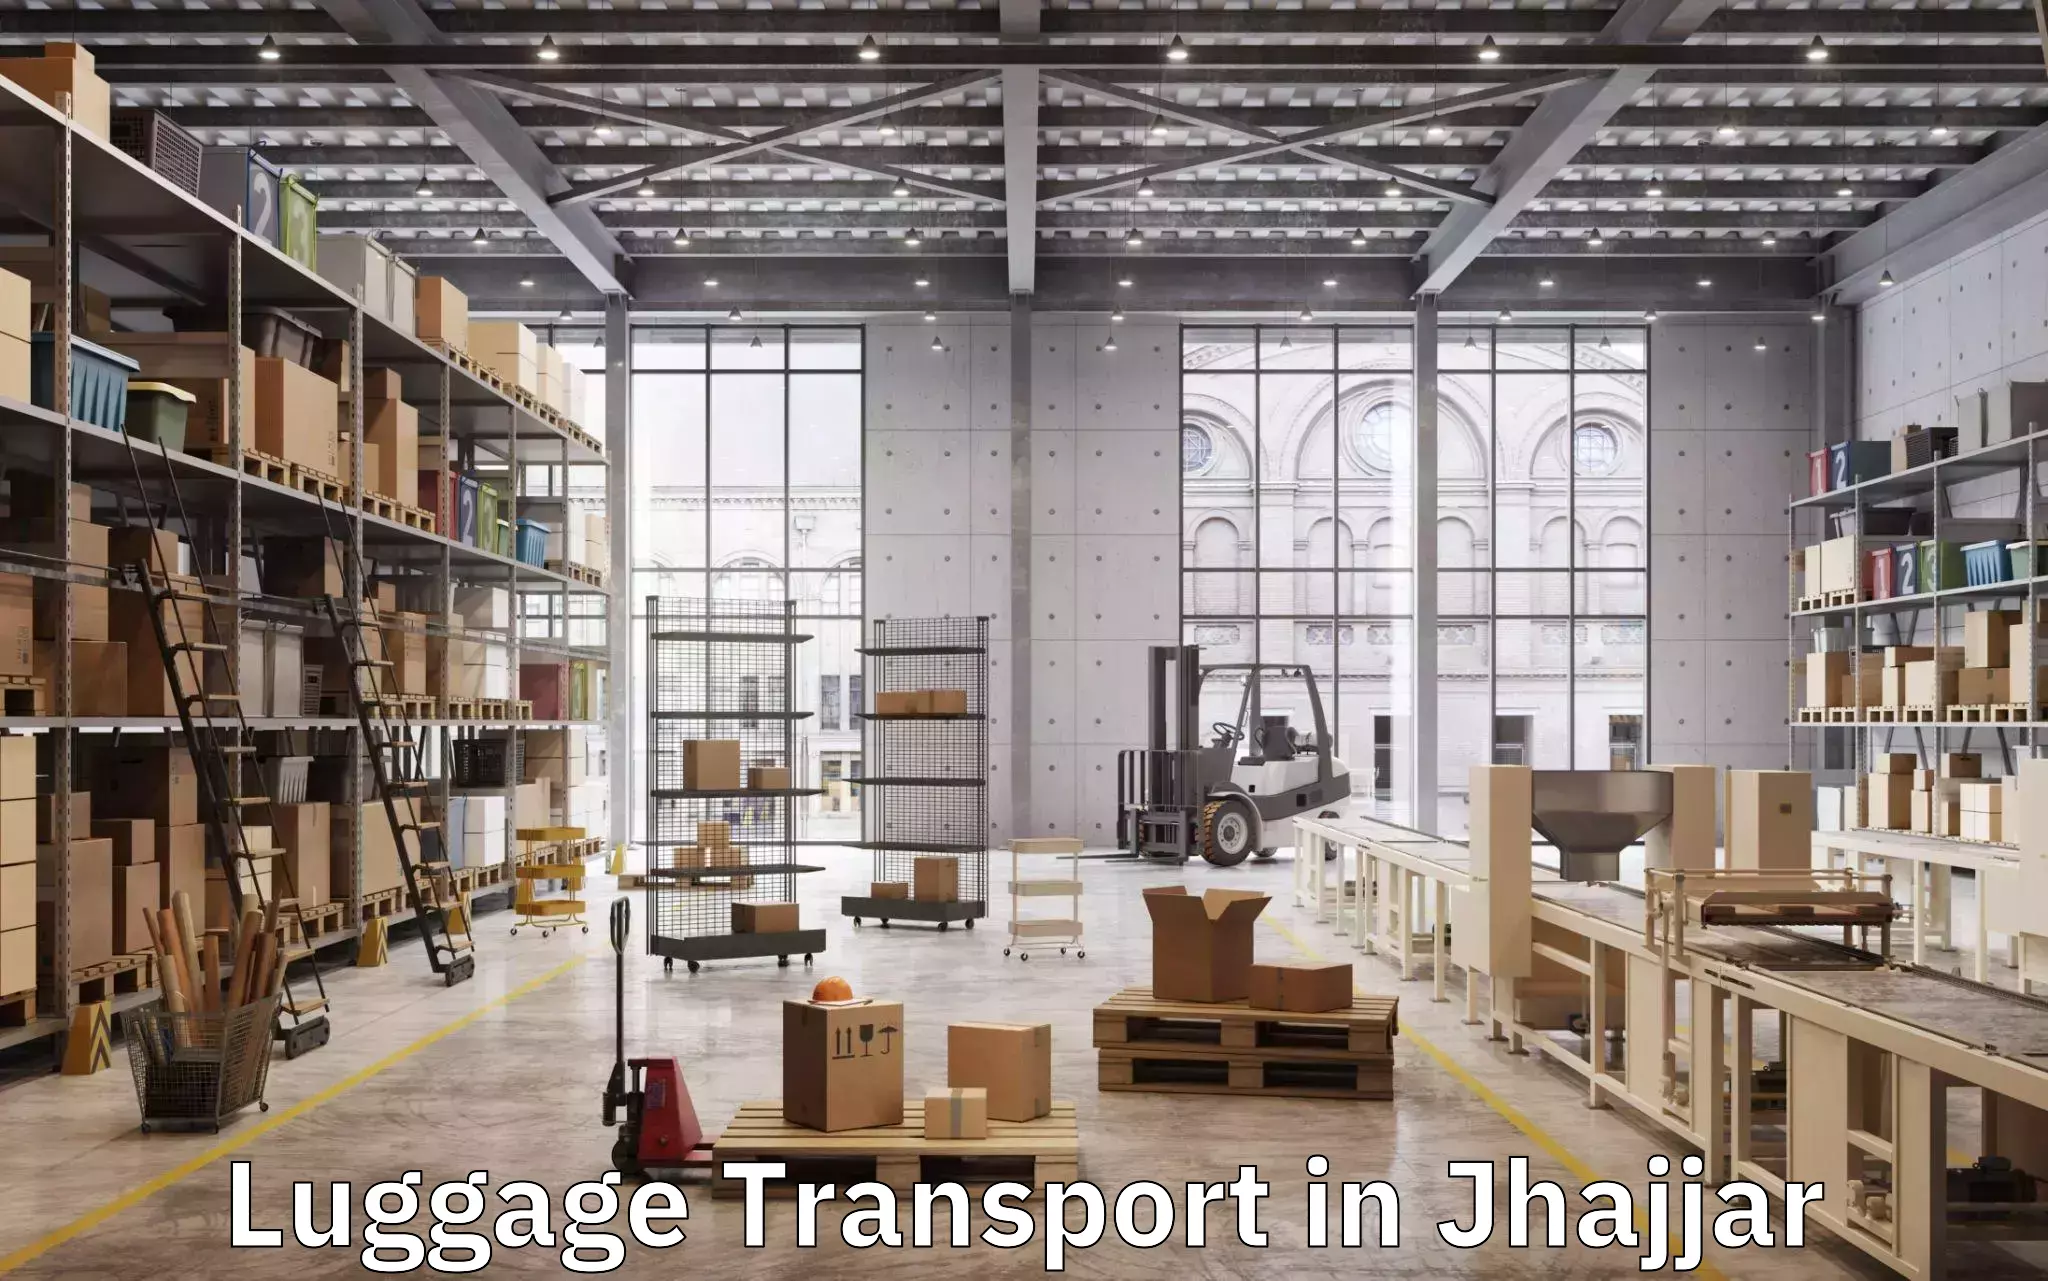 Luggage transit service in Jhajjar